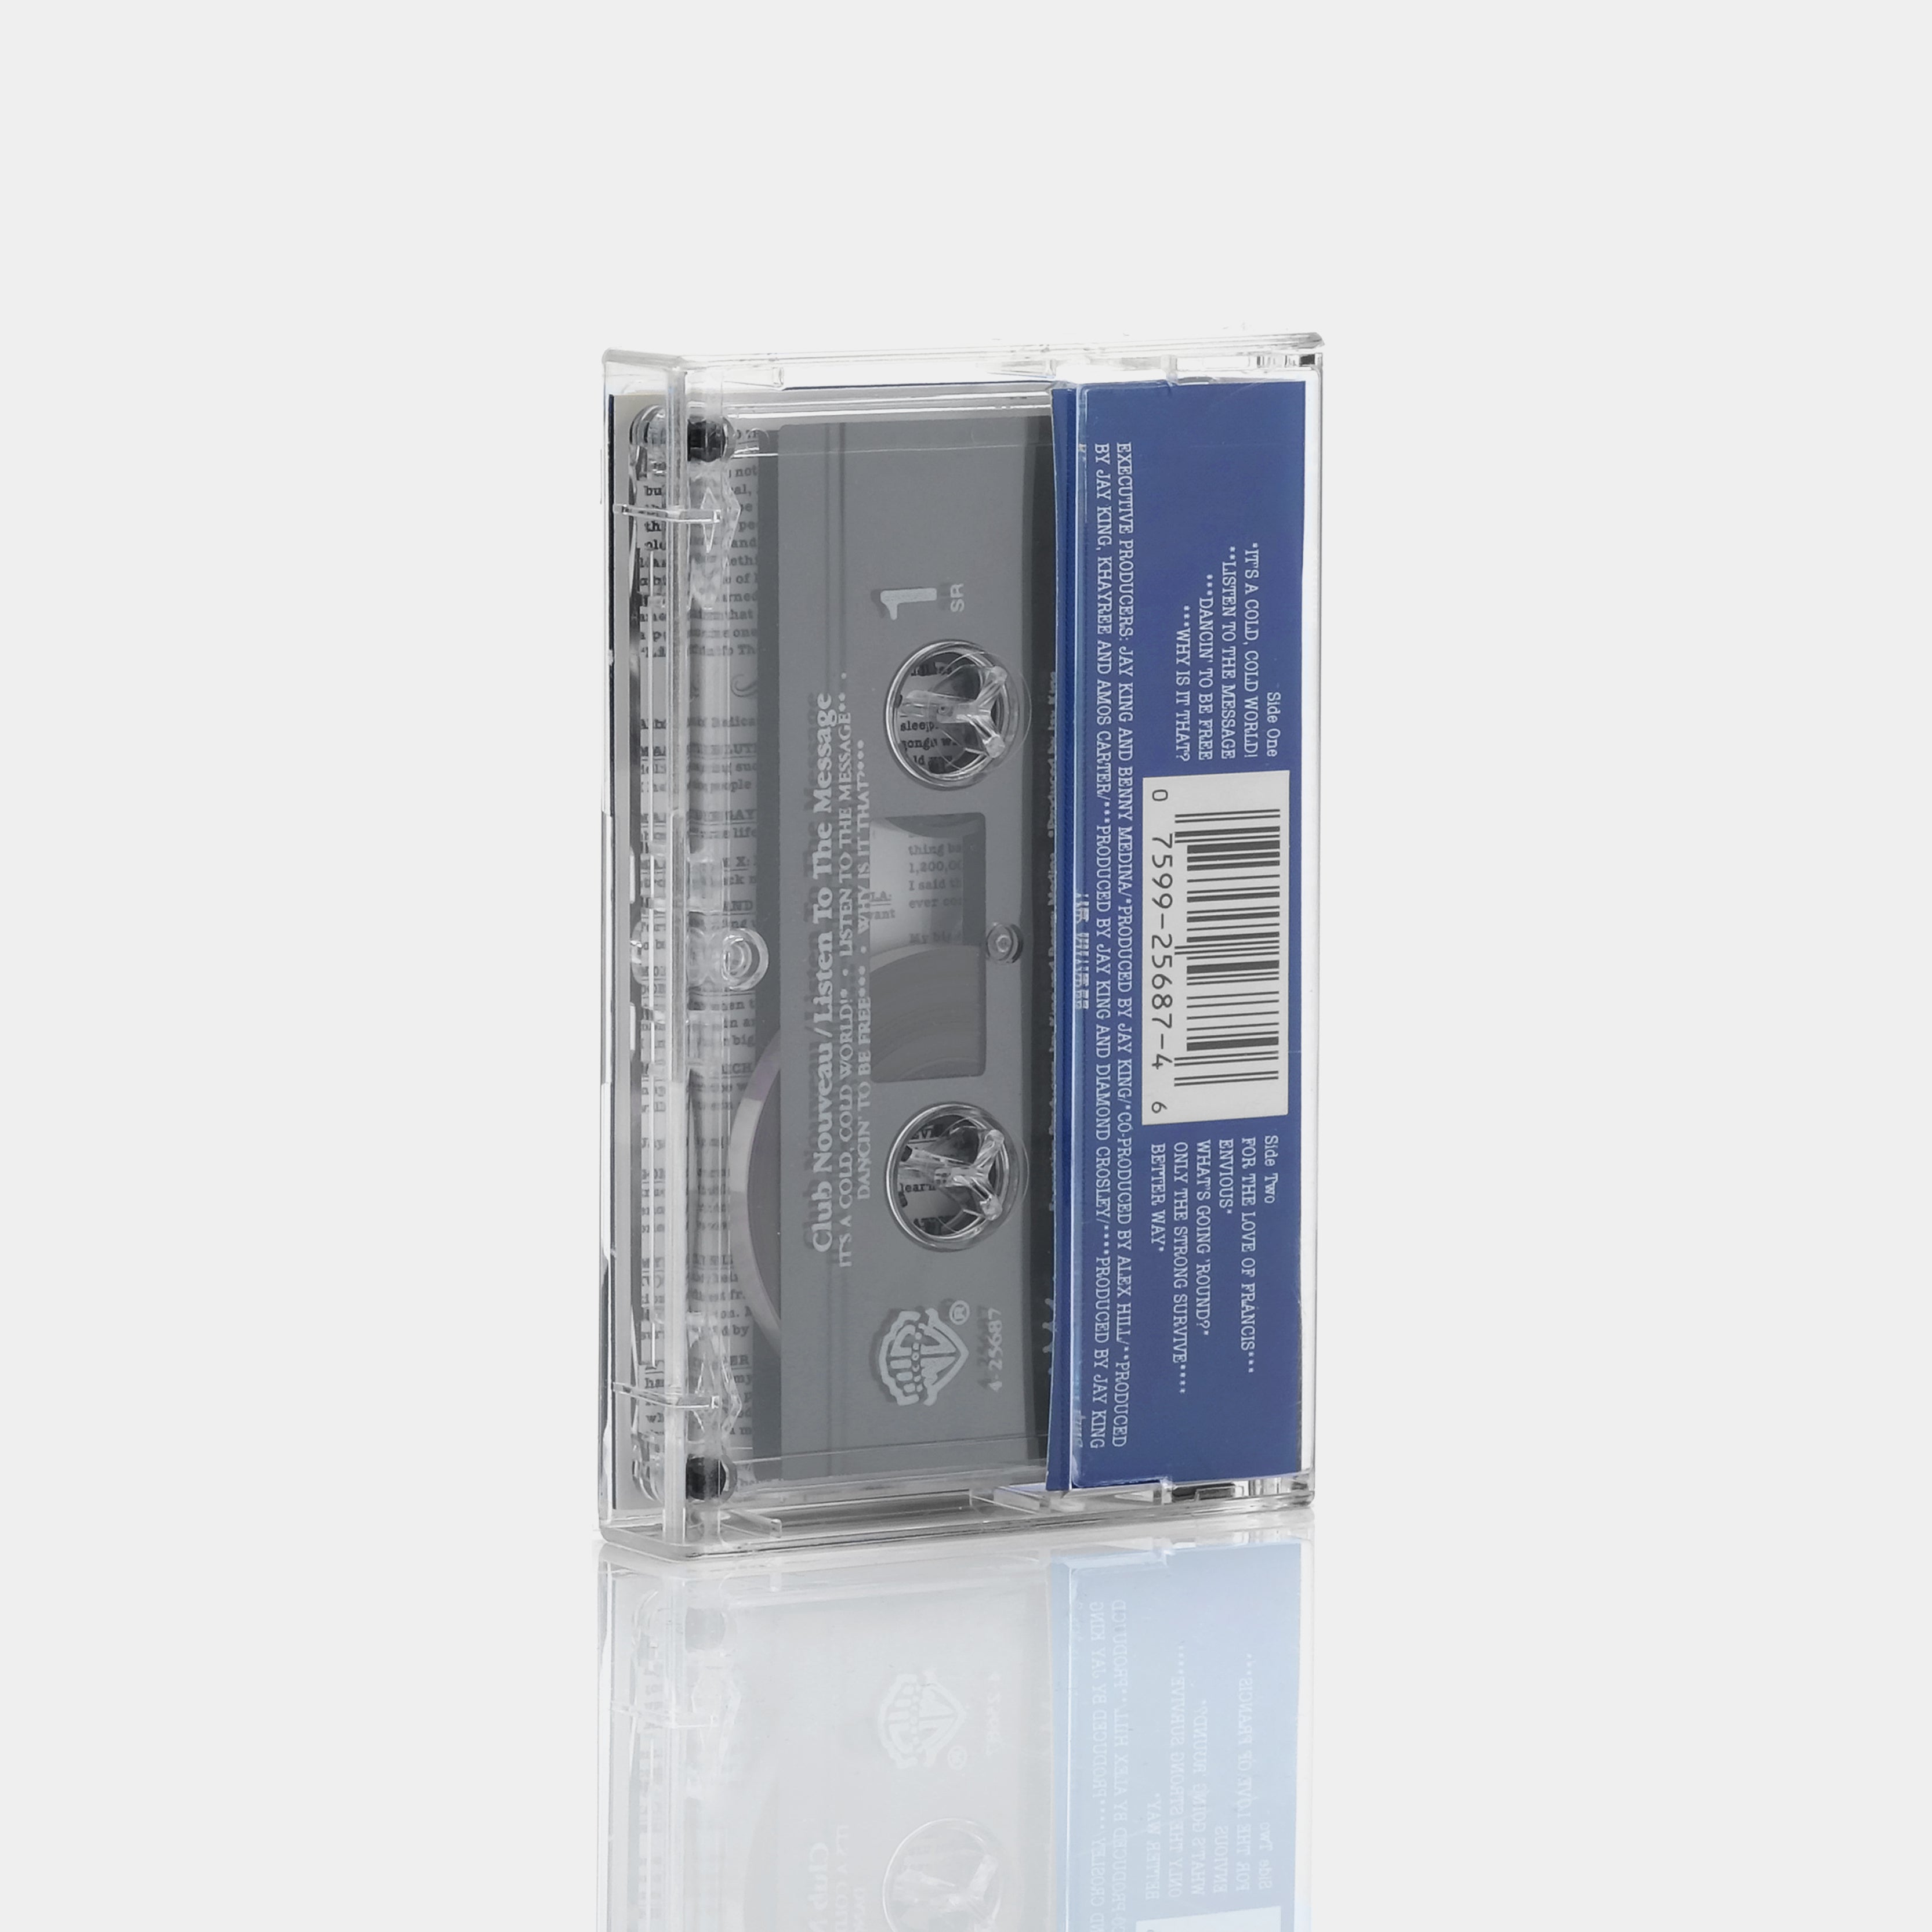 Club Nouveau - Listen To The Message Cassette Tape